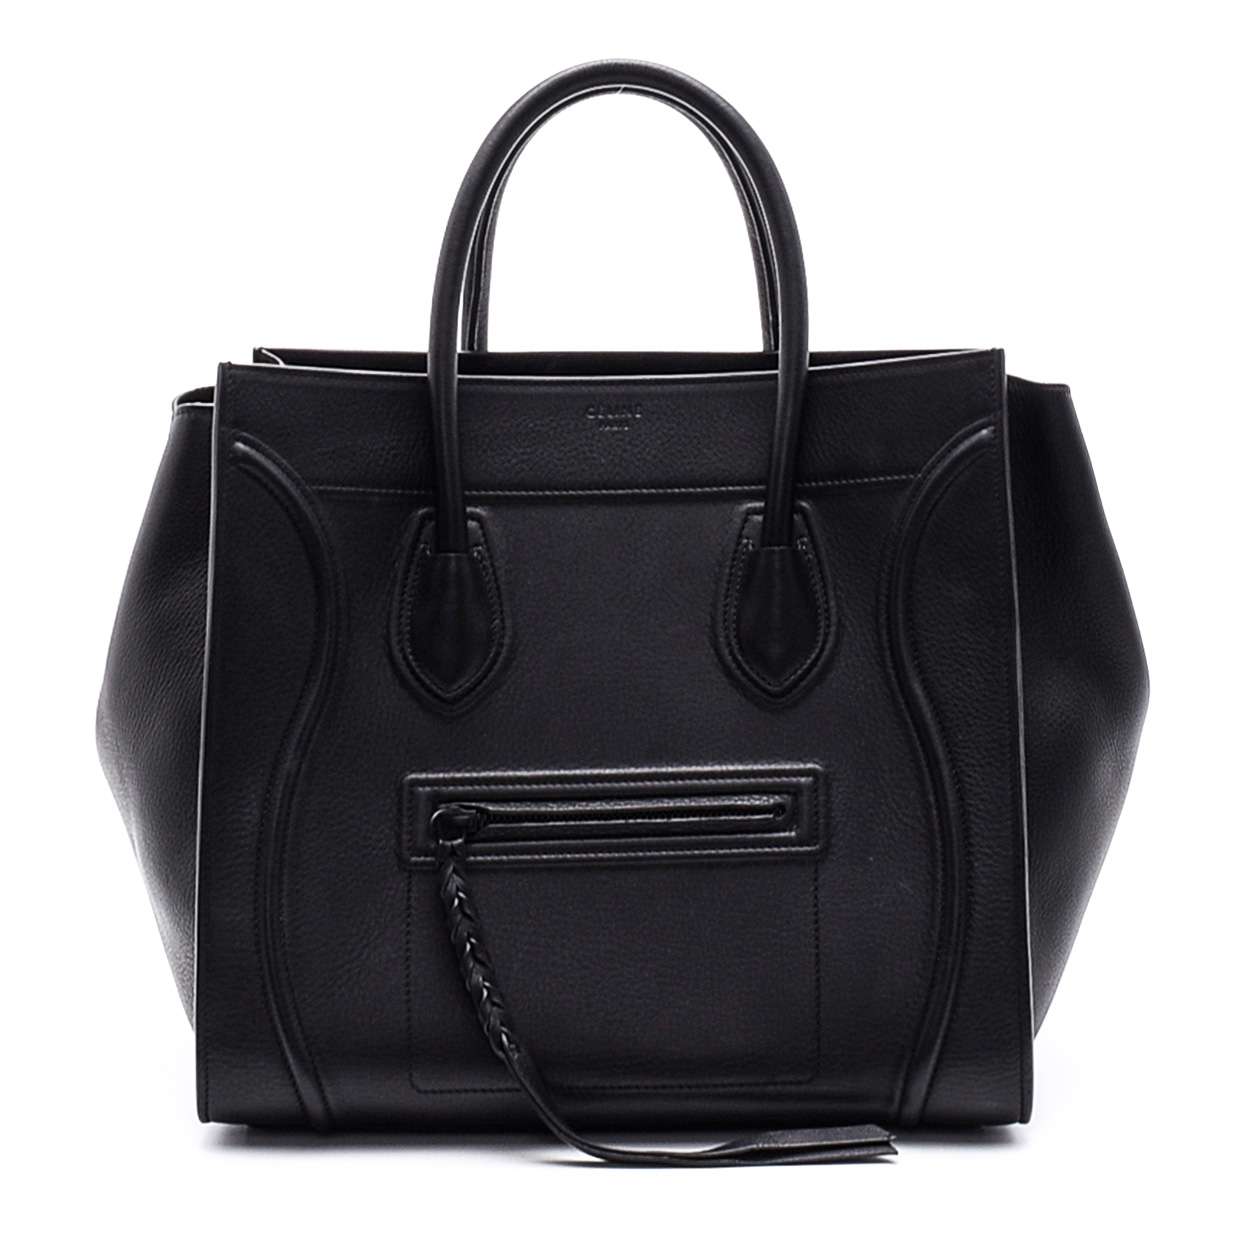 Celine - Black Leather Phantom Luggage Medium Tote Bag